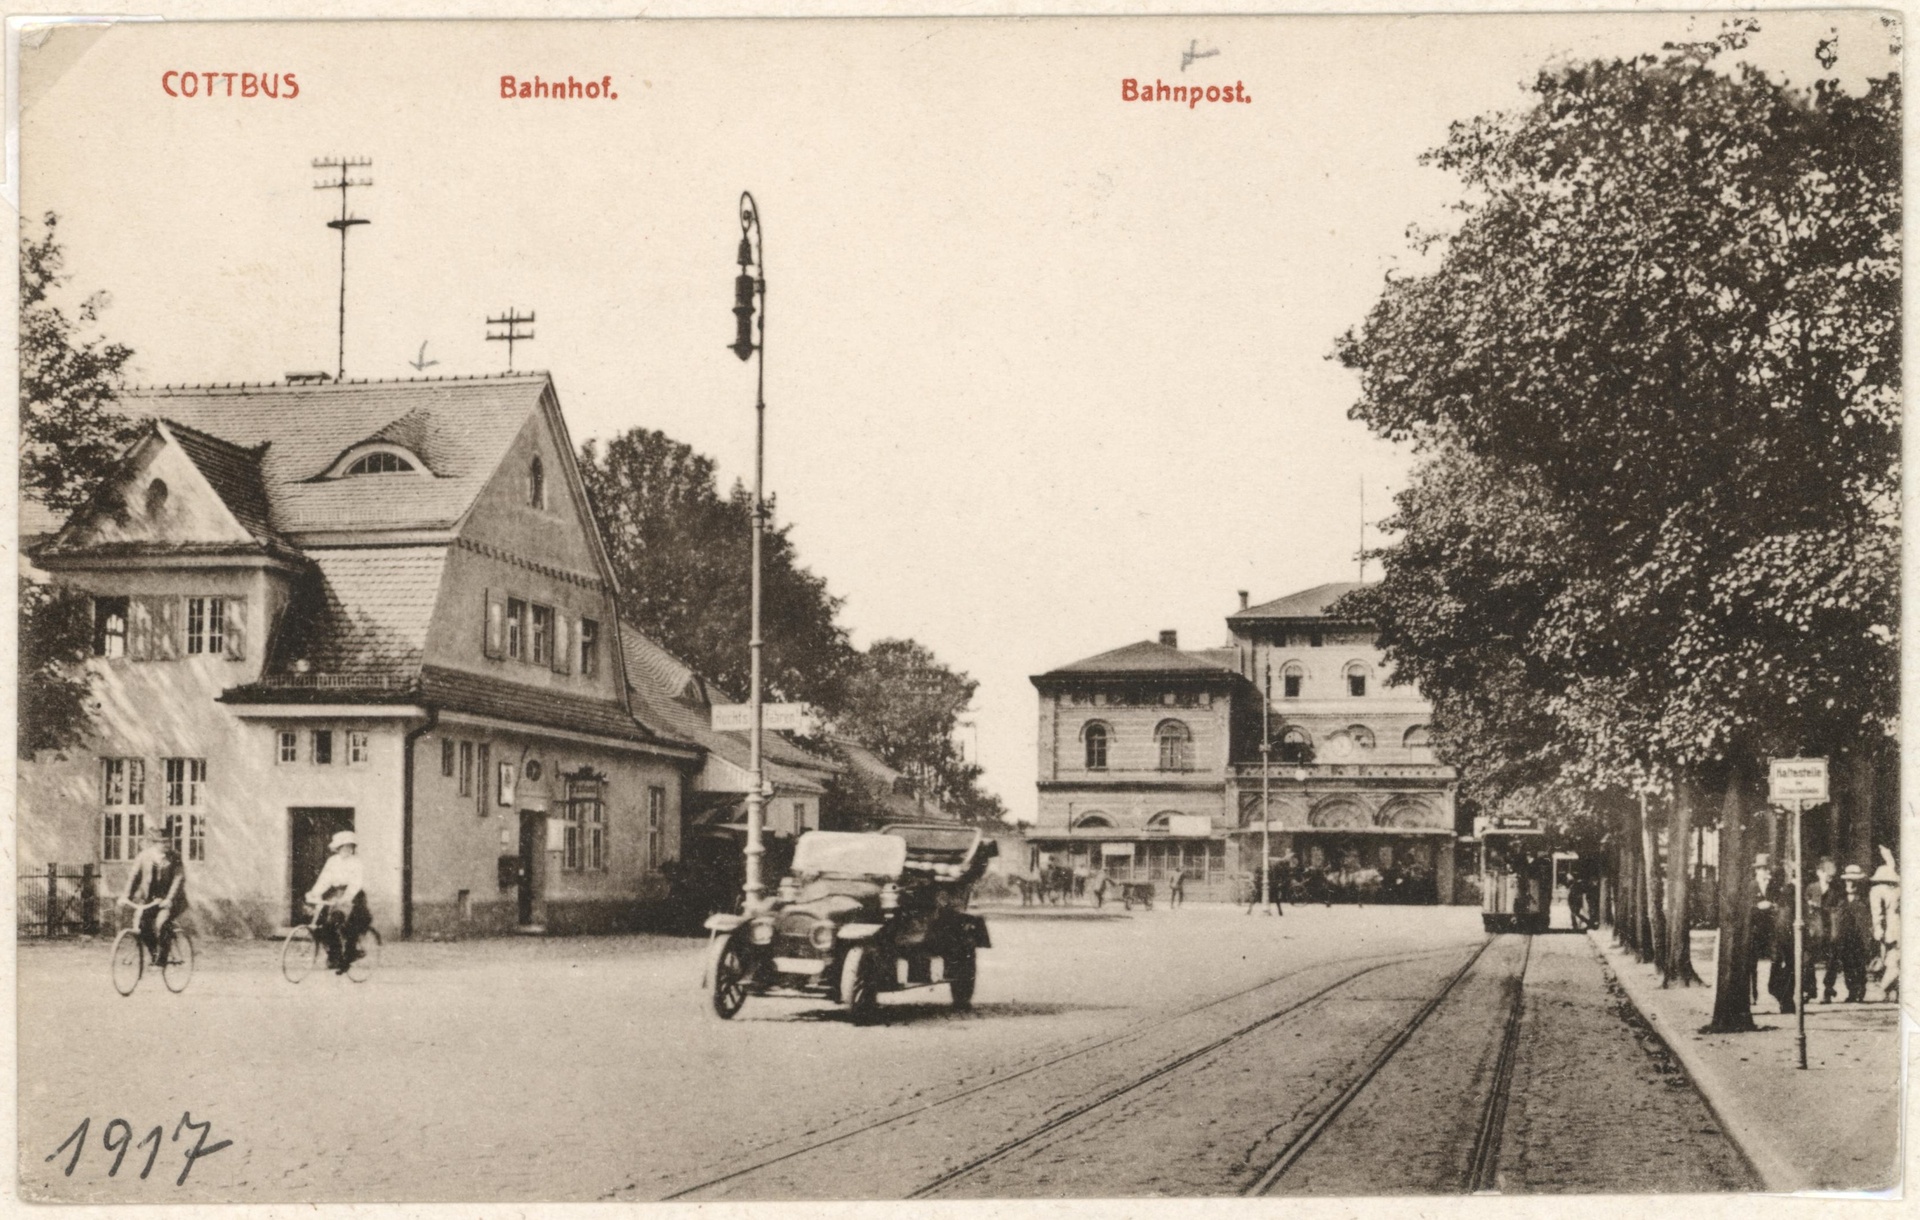 Bahnhof mit Bahnpostgebäude um 1917.jpg